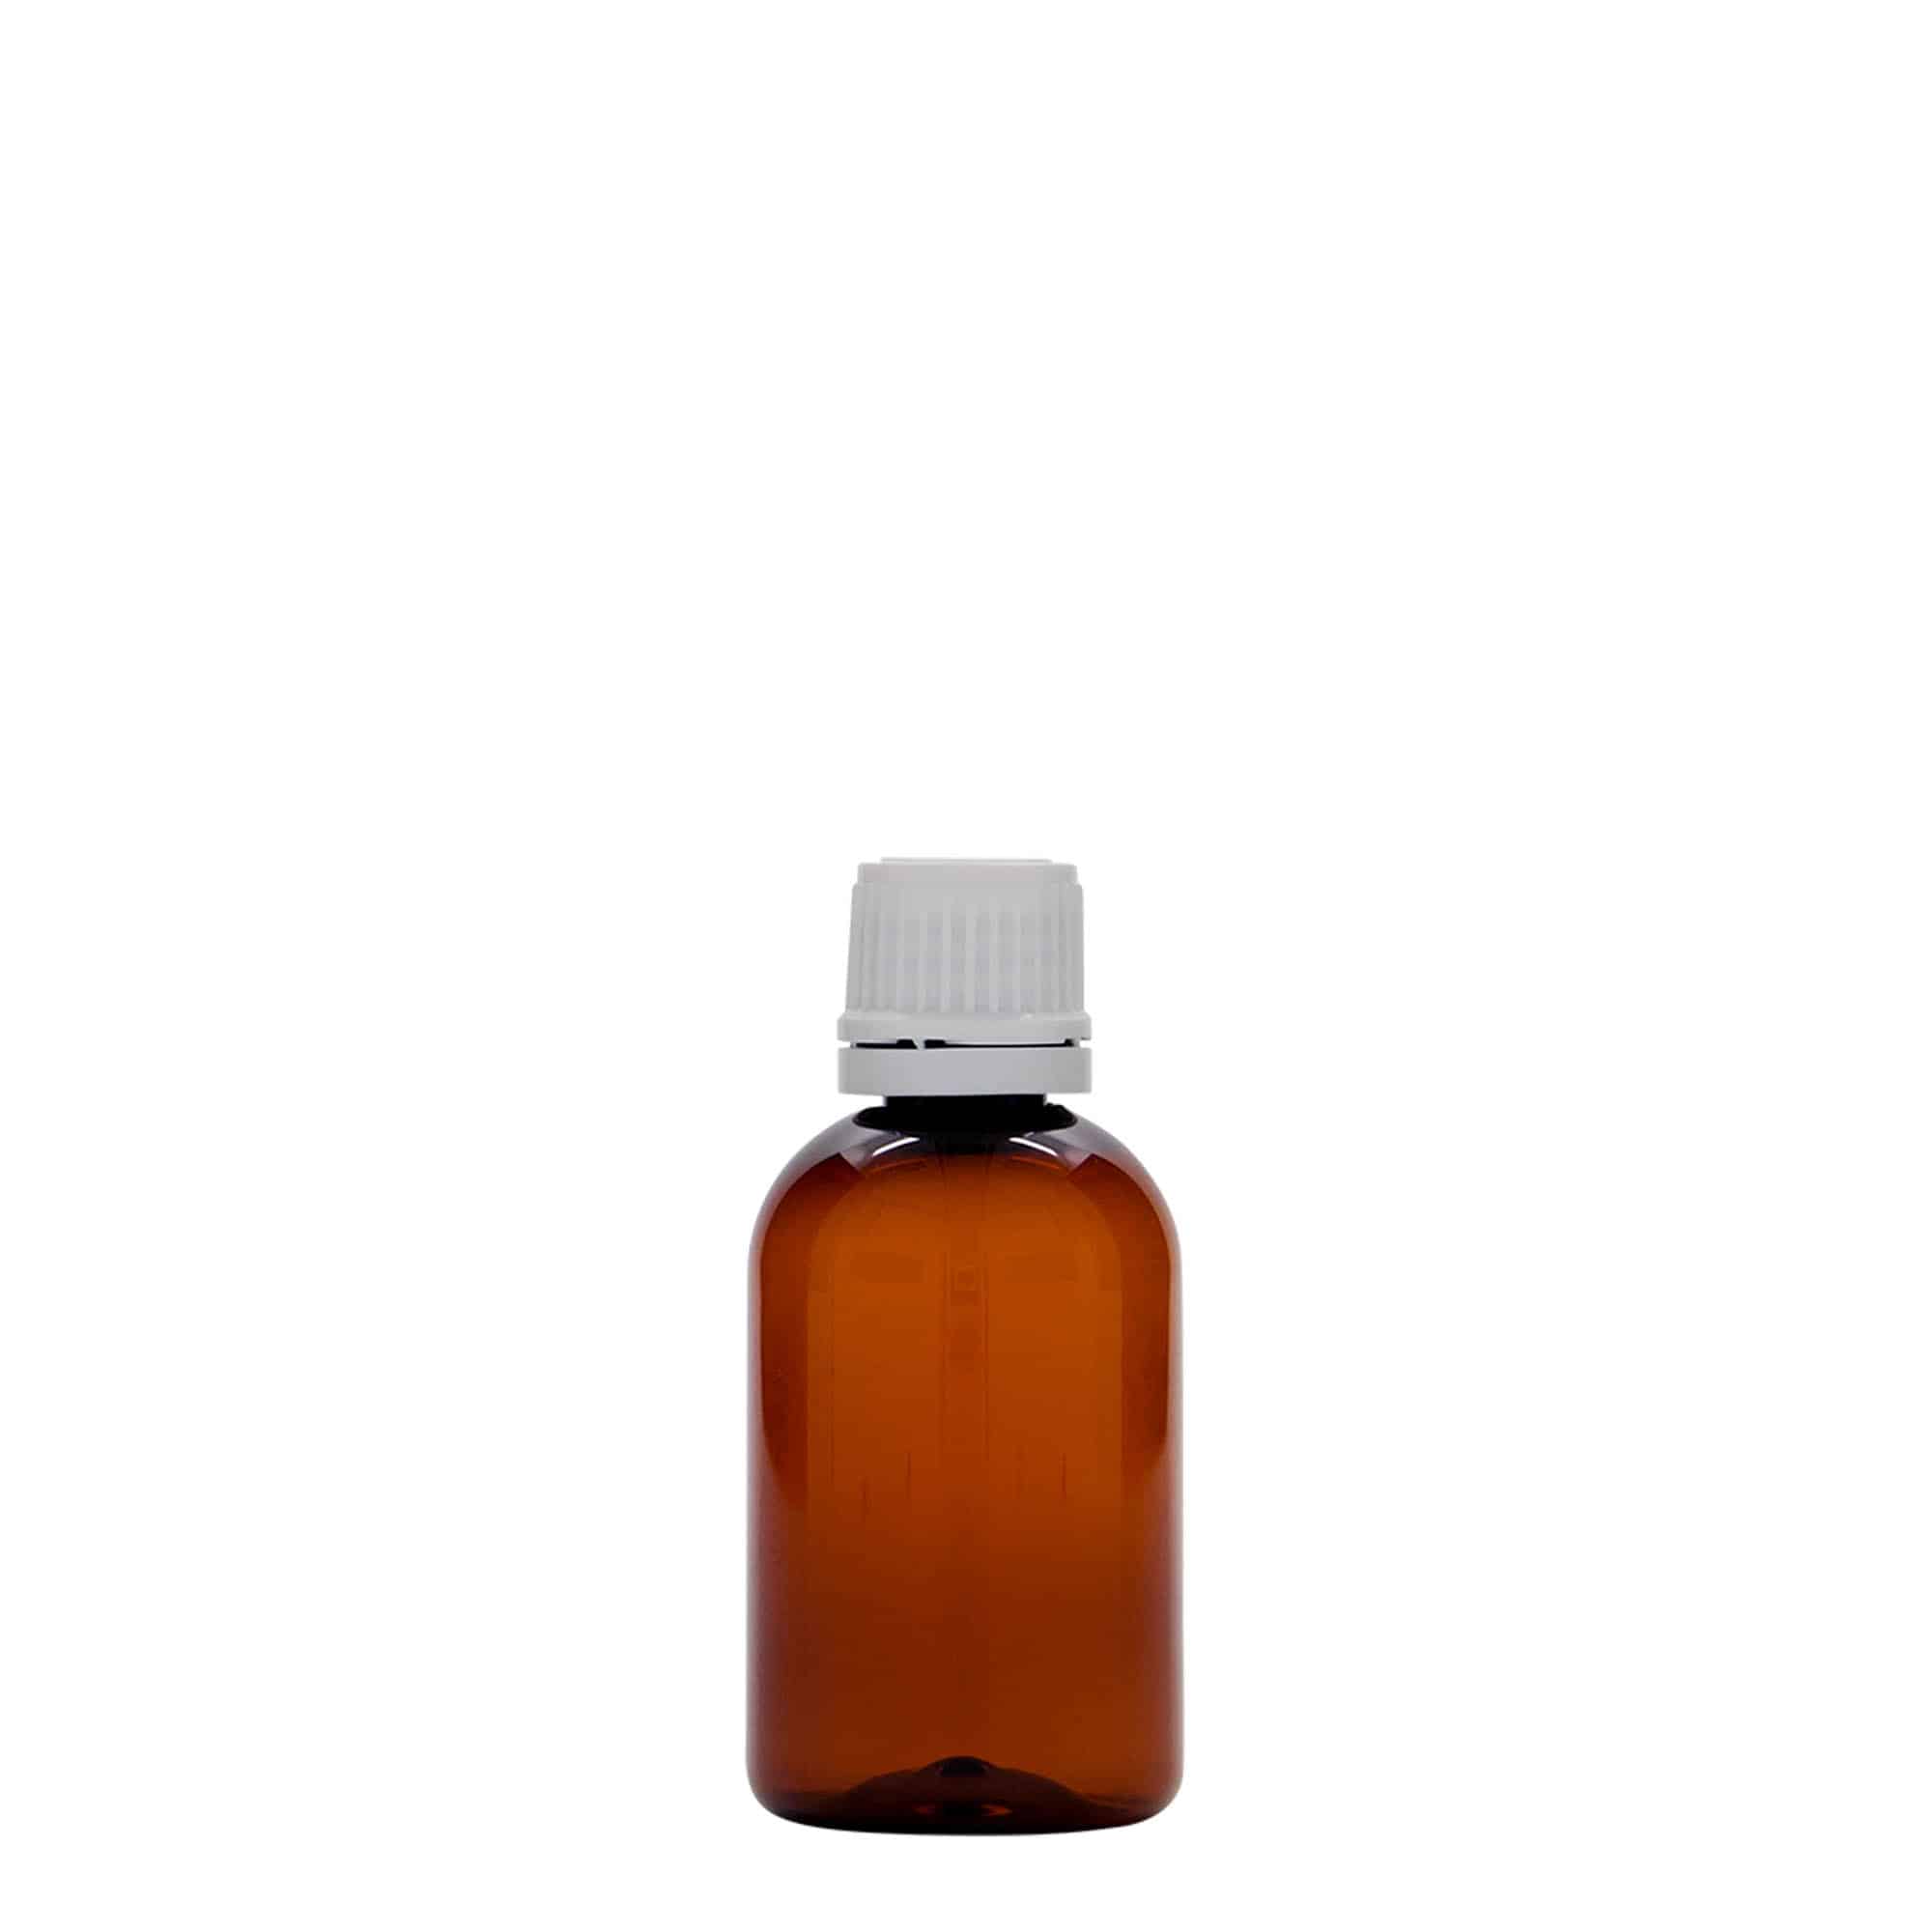 50 ml butelka farmaceutyczna PET 'Easy Living', kolor brązowy, tworzywo sztuczne, zamknięcie: DIN 18